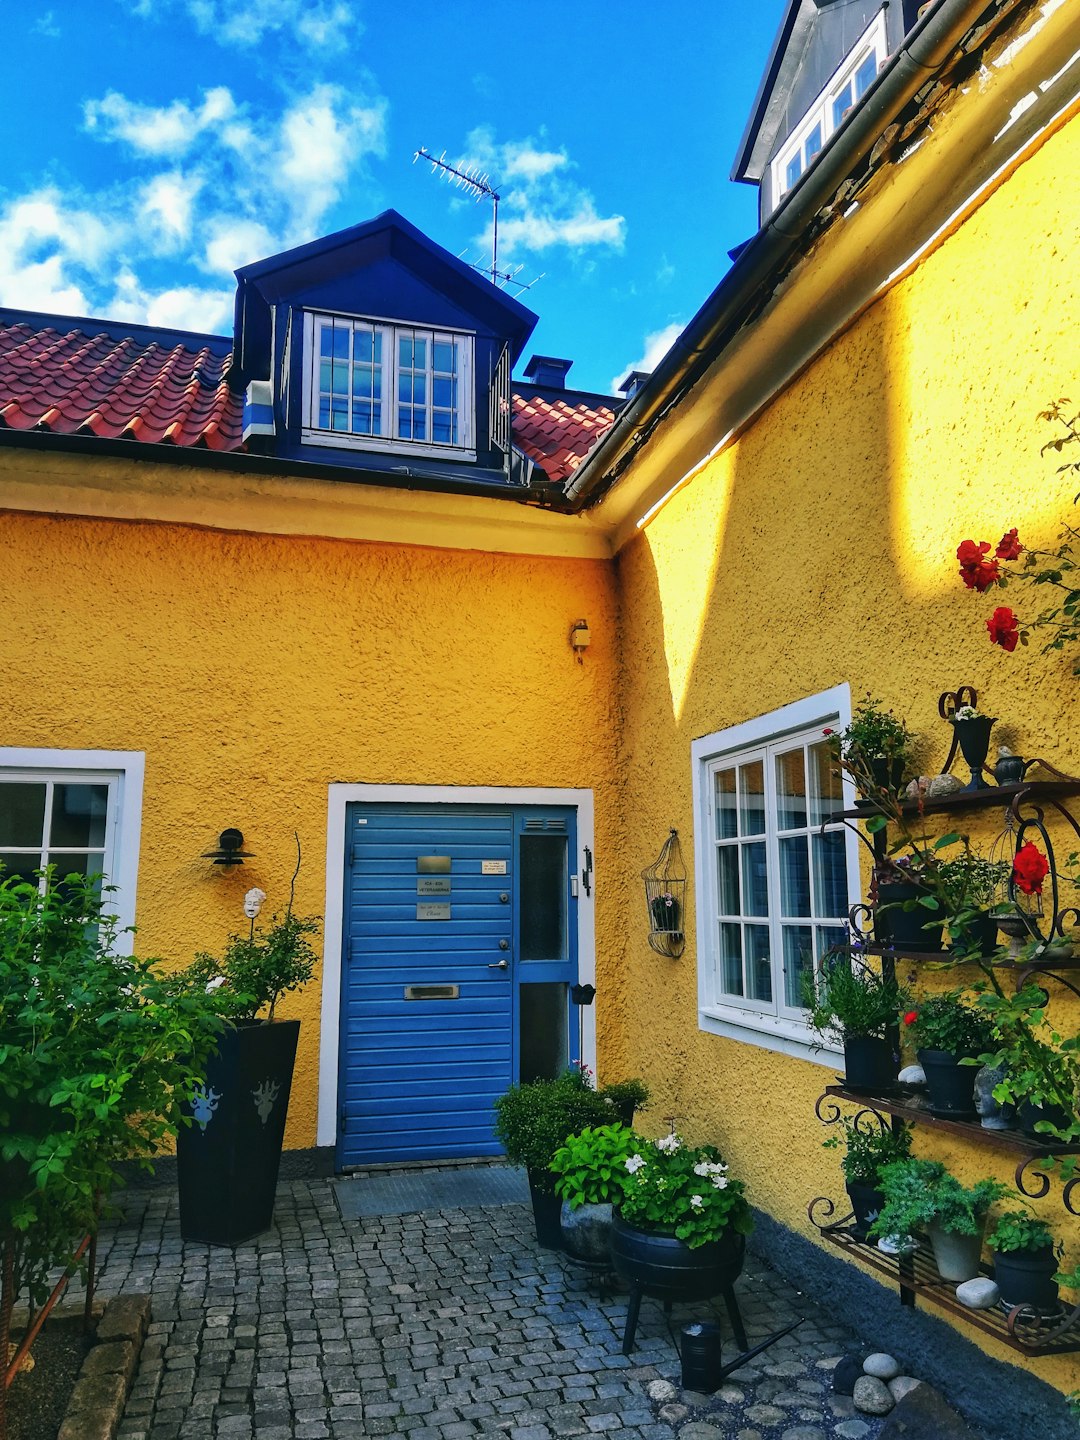 Cottage photo spot Växjö Sweden